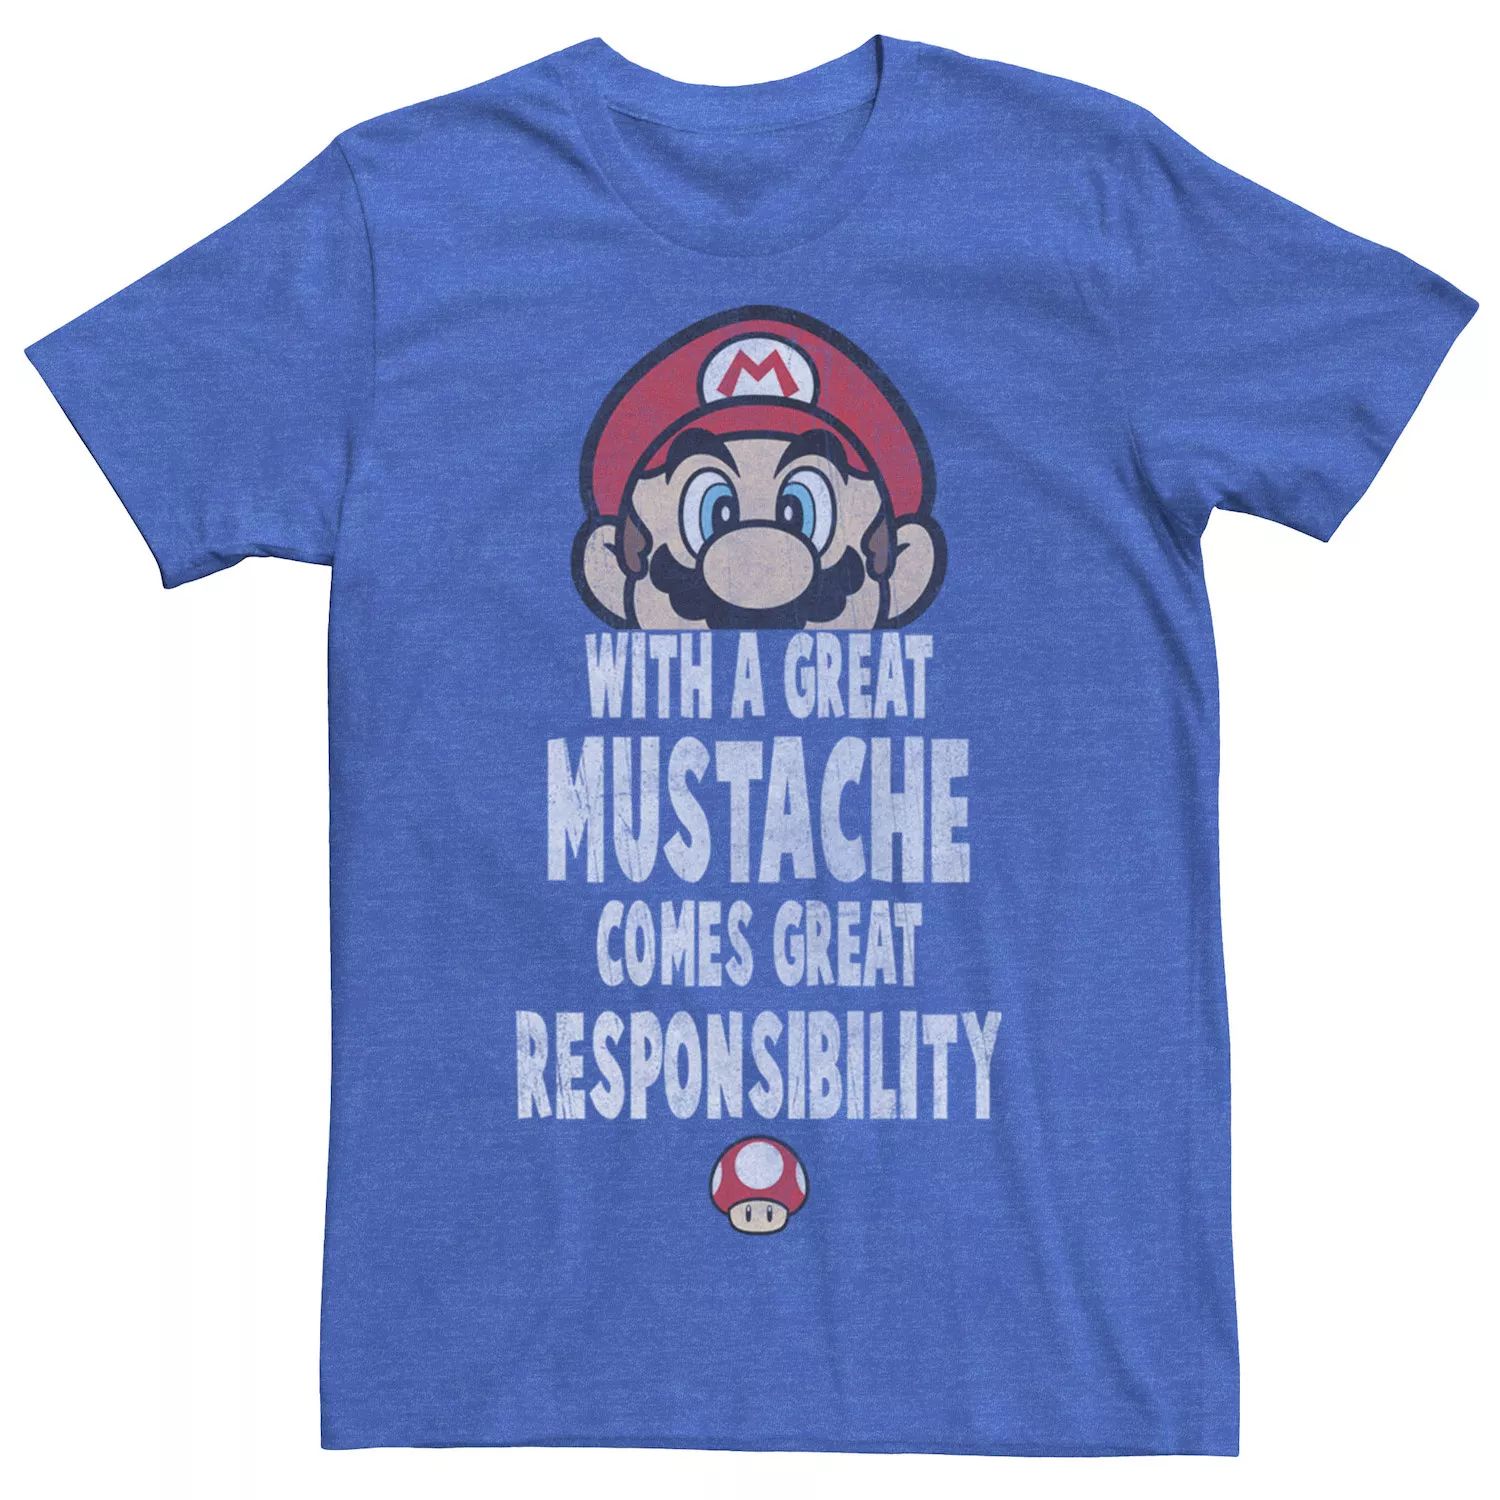 Мужская футболка Super Mario с большими усами — отличная ответственная футболка Licensed Character